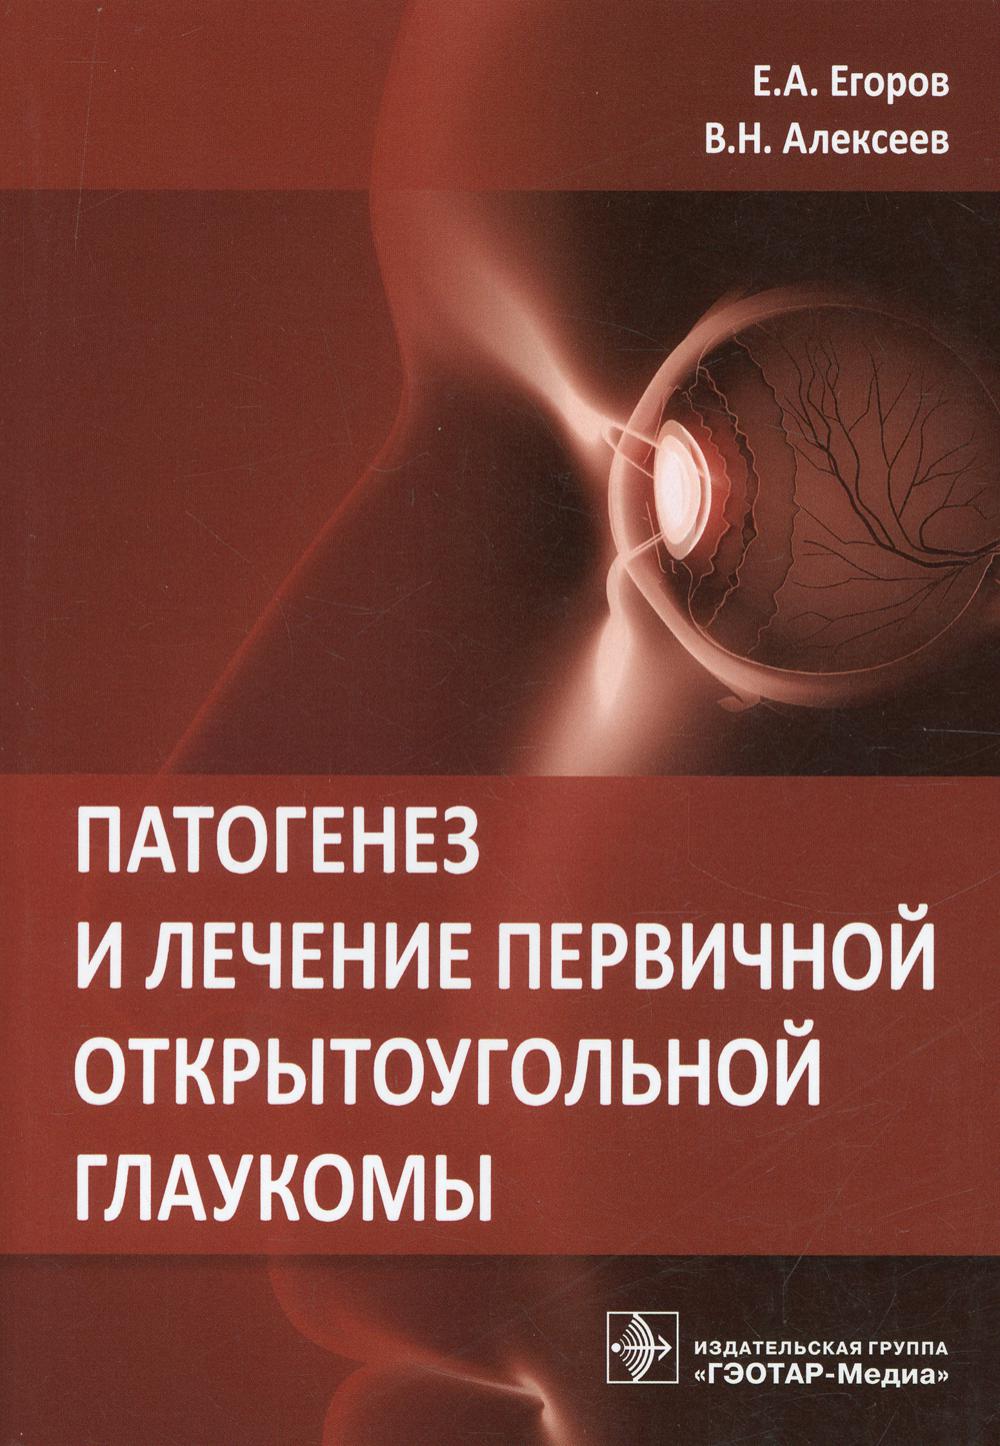 фото Книга патогенез и лечение первичной открытоугольной глаукомы гэотар-медиа